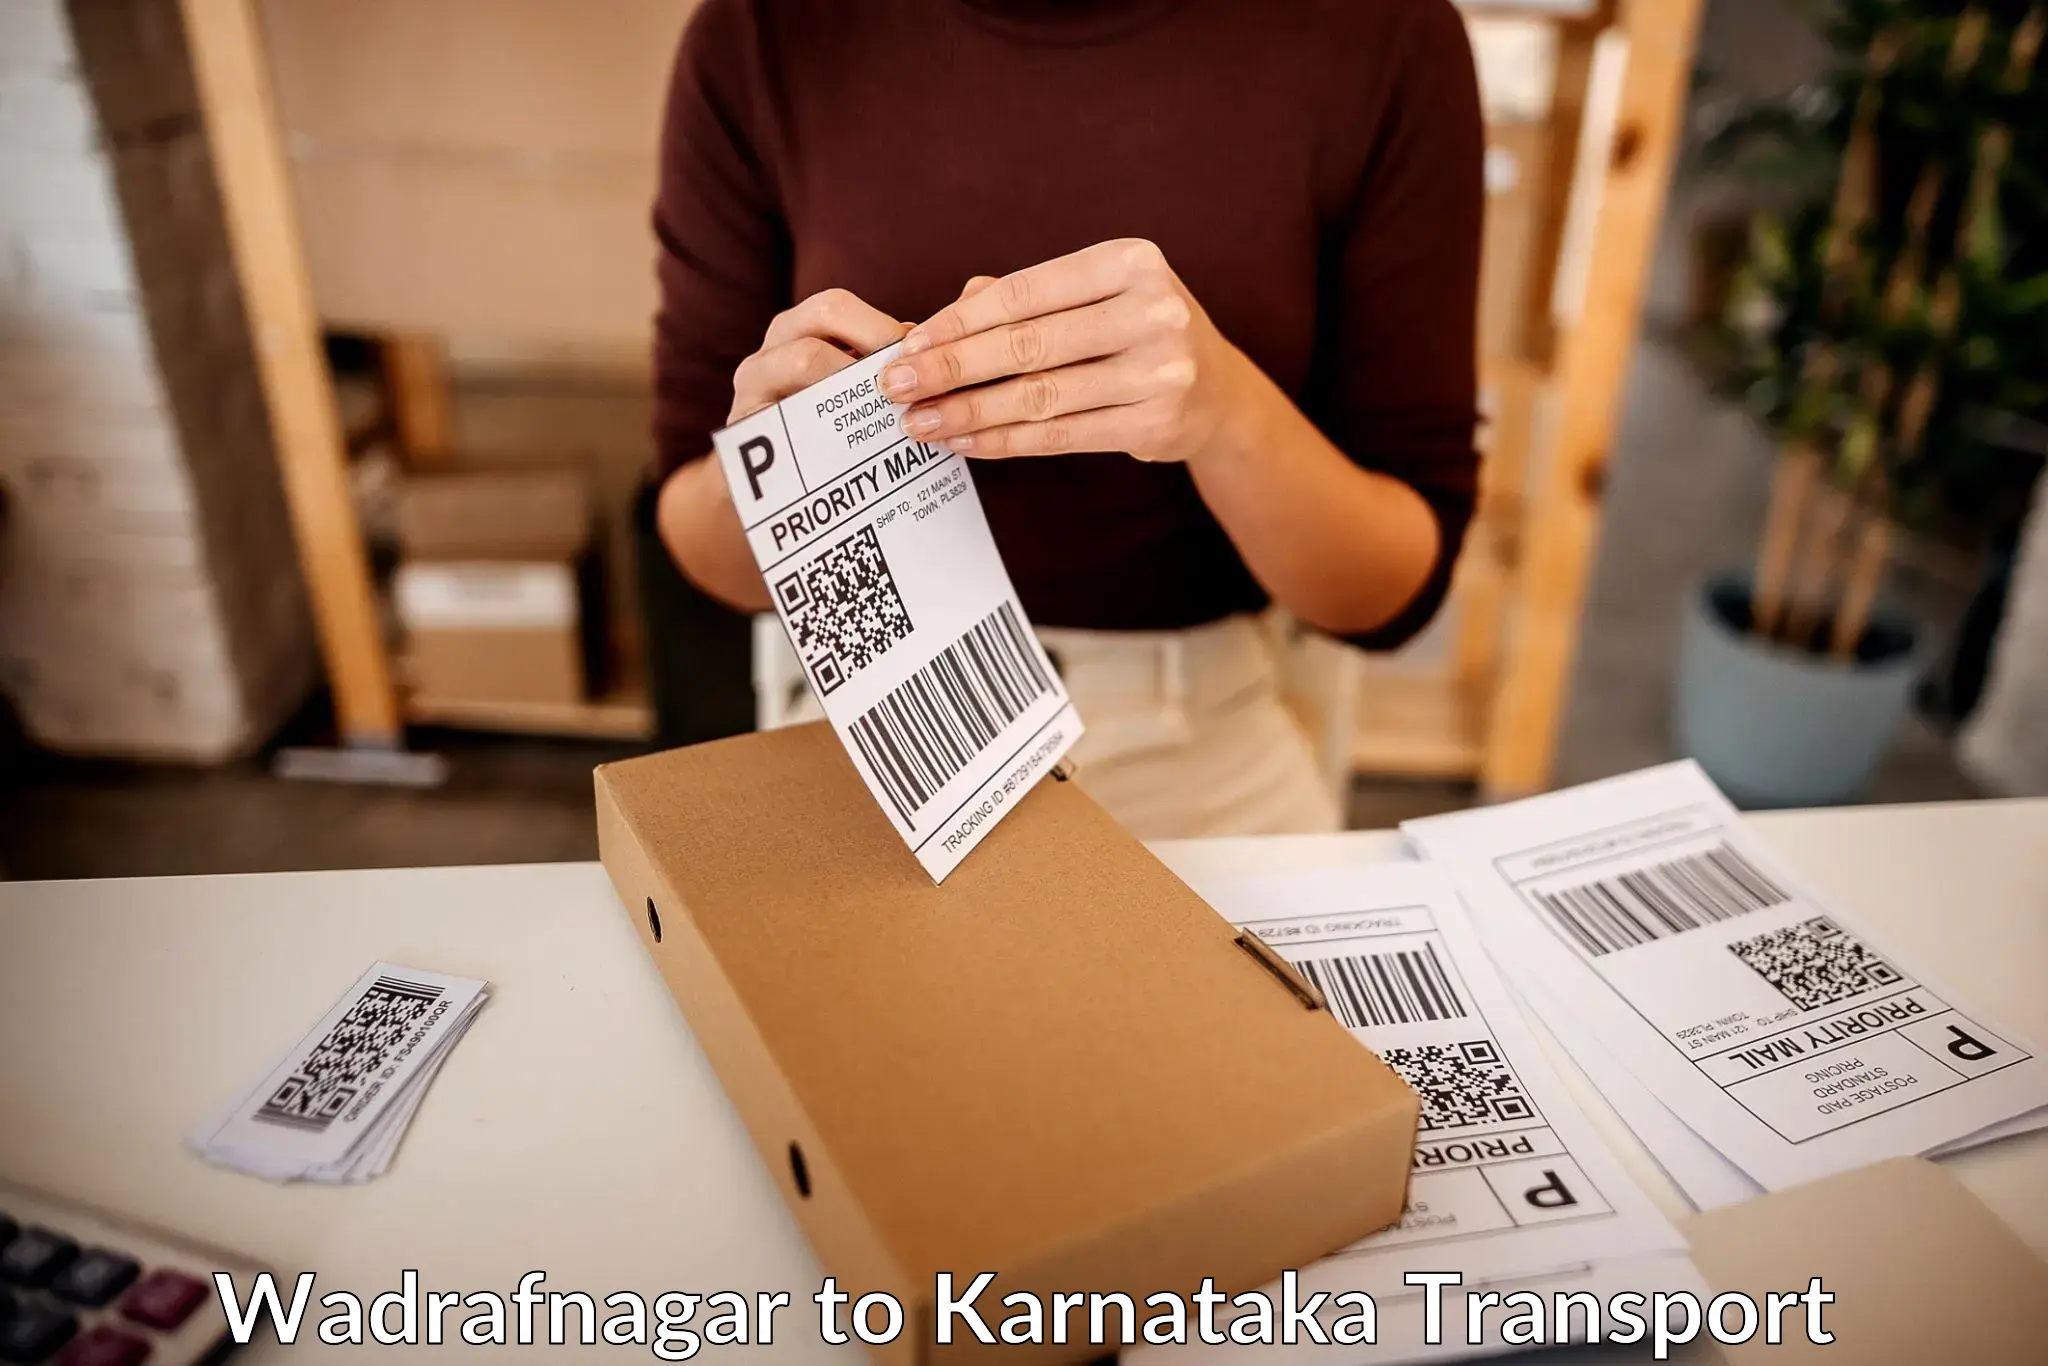 Package delivery services Wadrafnagar to Doddaballapura